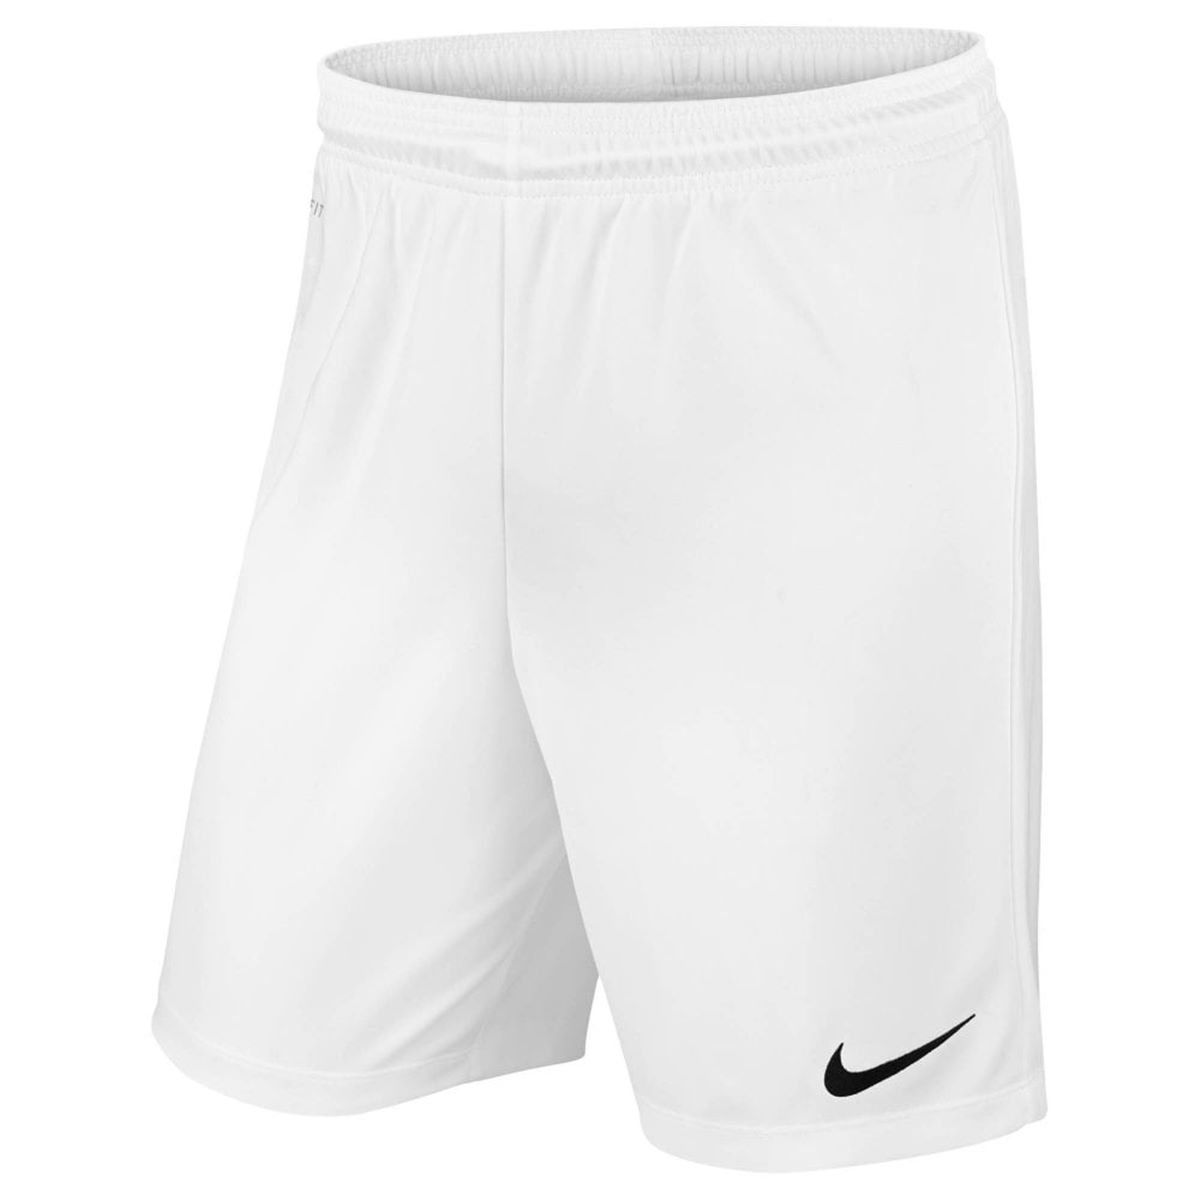 8 Best White Nike Running Shorts For 2023